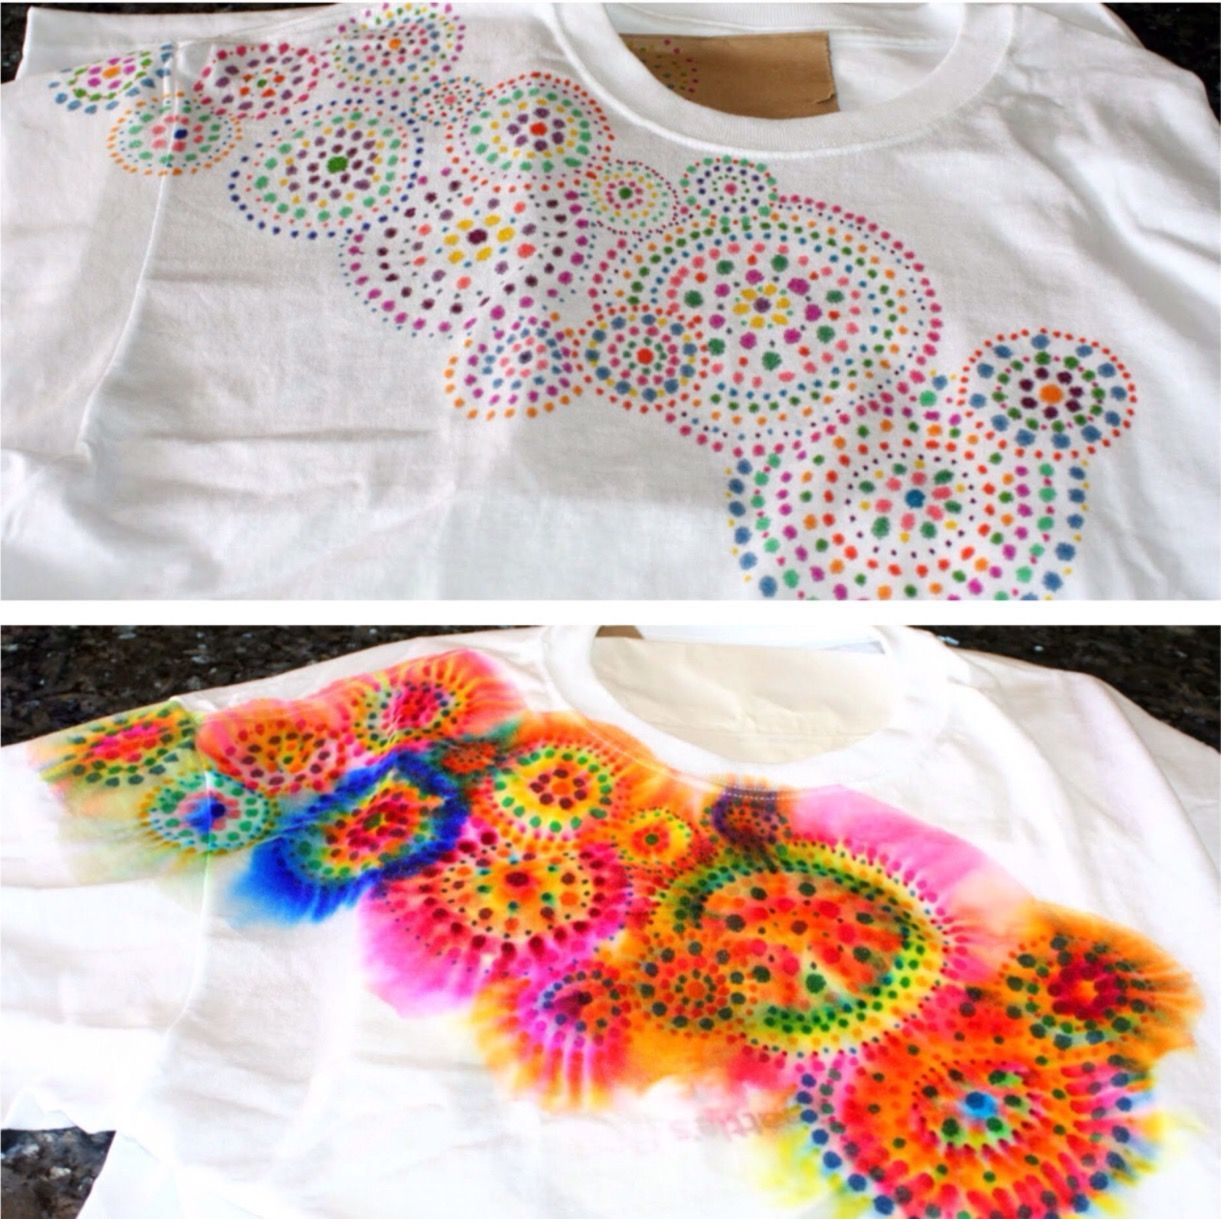 Sharpie tie dye -   20 DIY Clothes Projects tie dye ideas